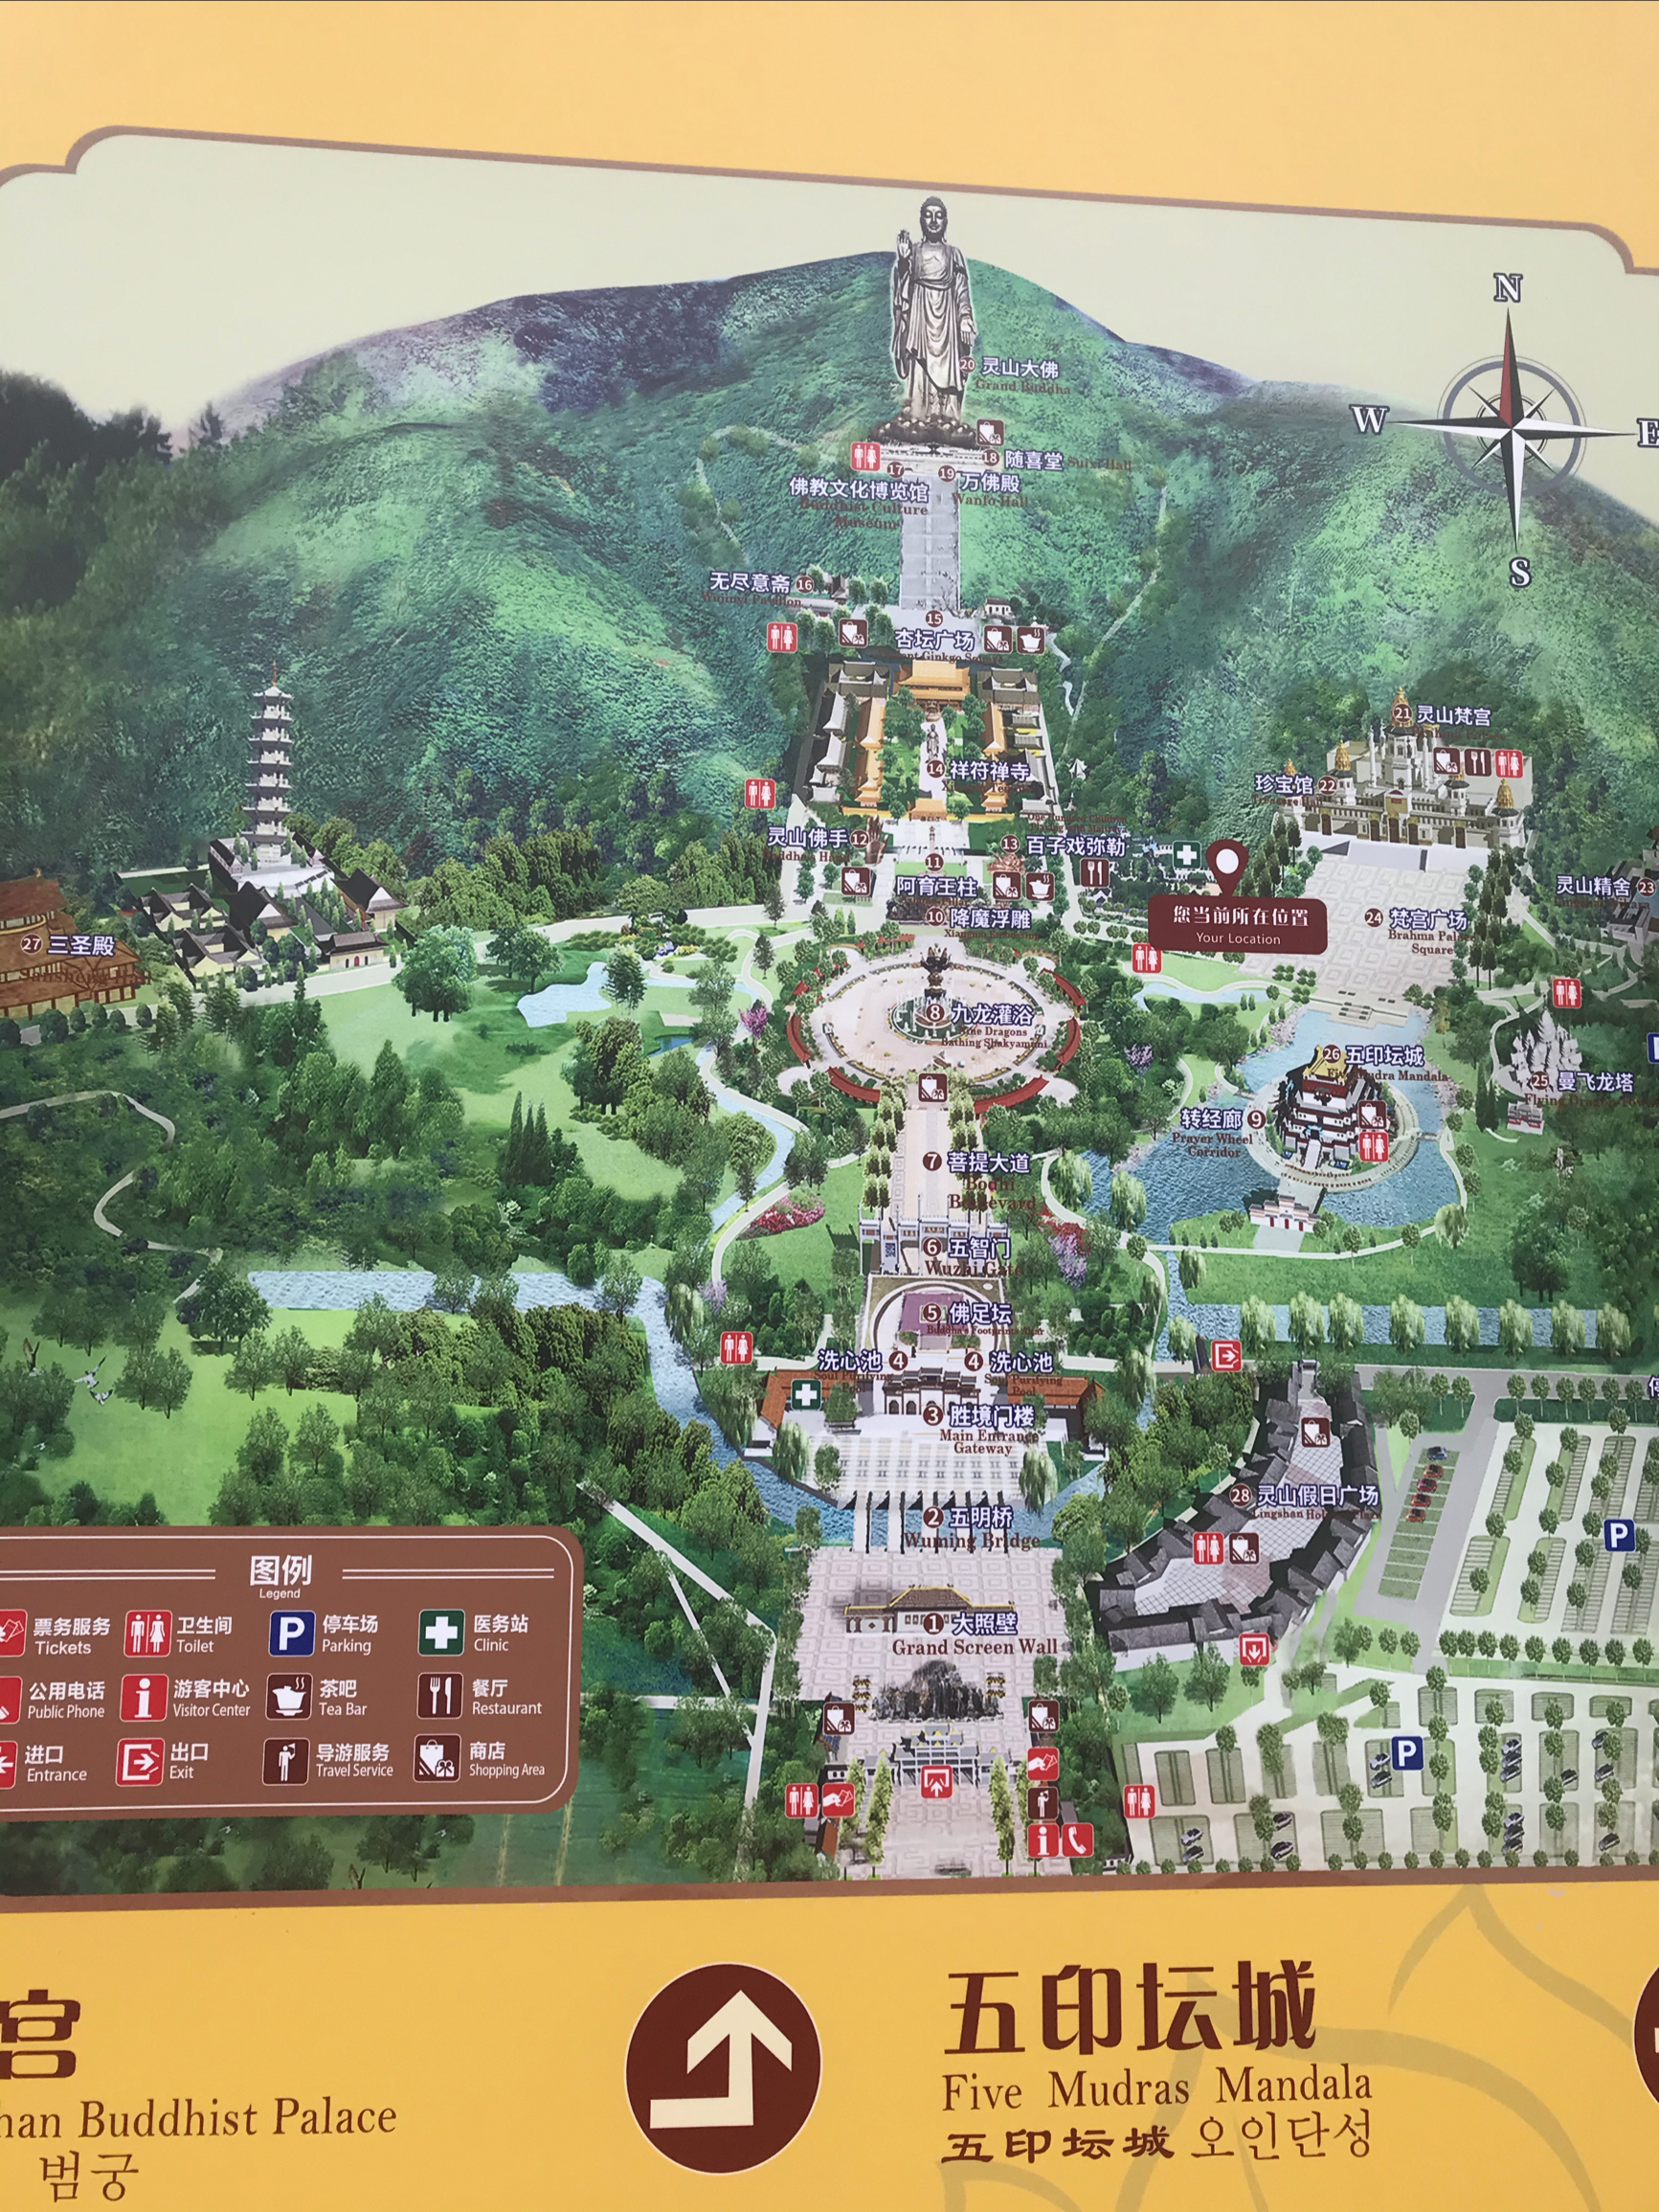 无锡灵山大佛景区很大，规模宏伟，是个佛教圣地。